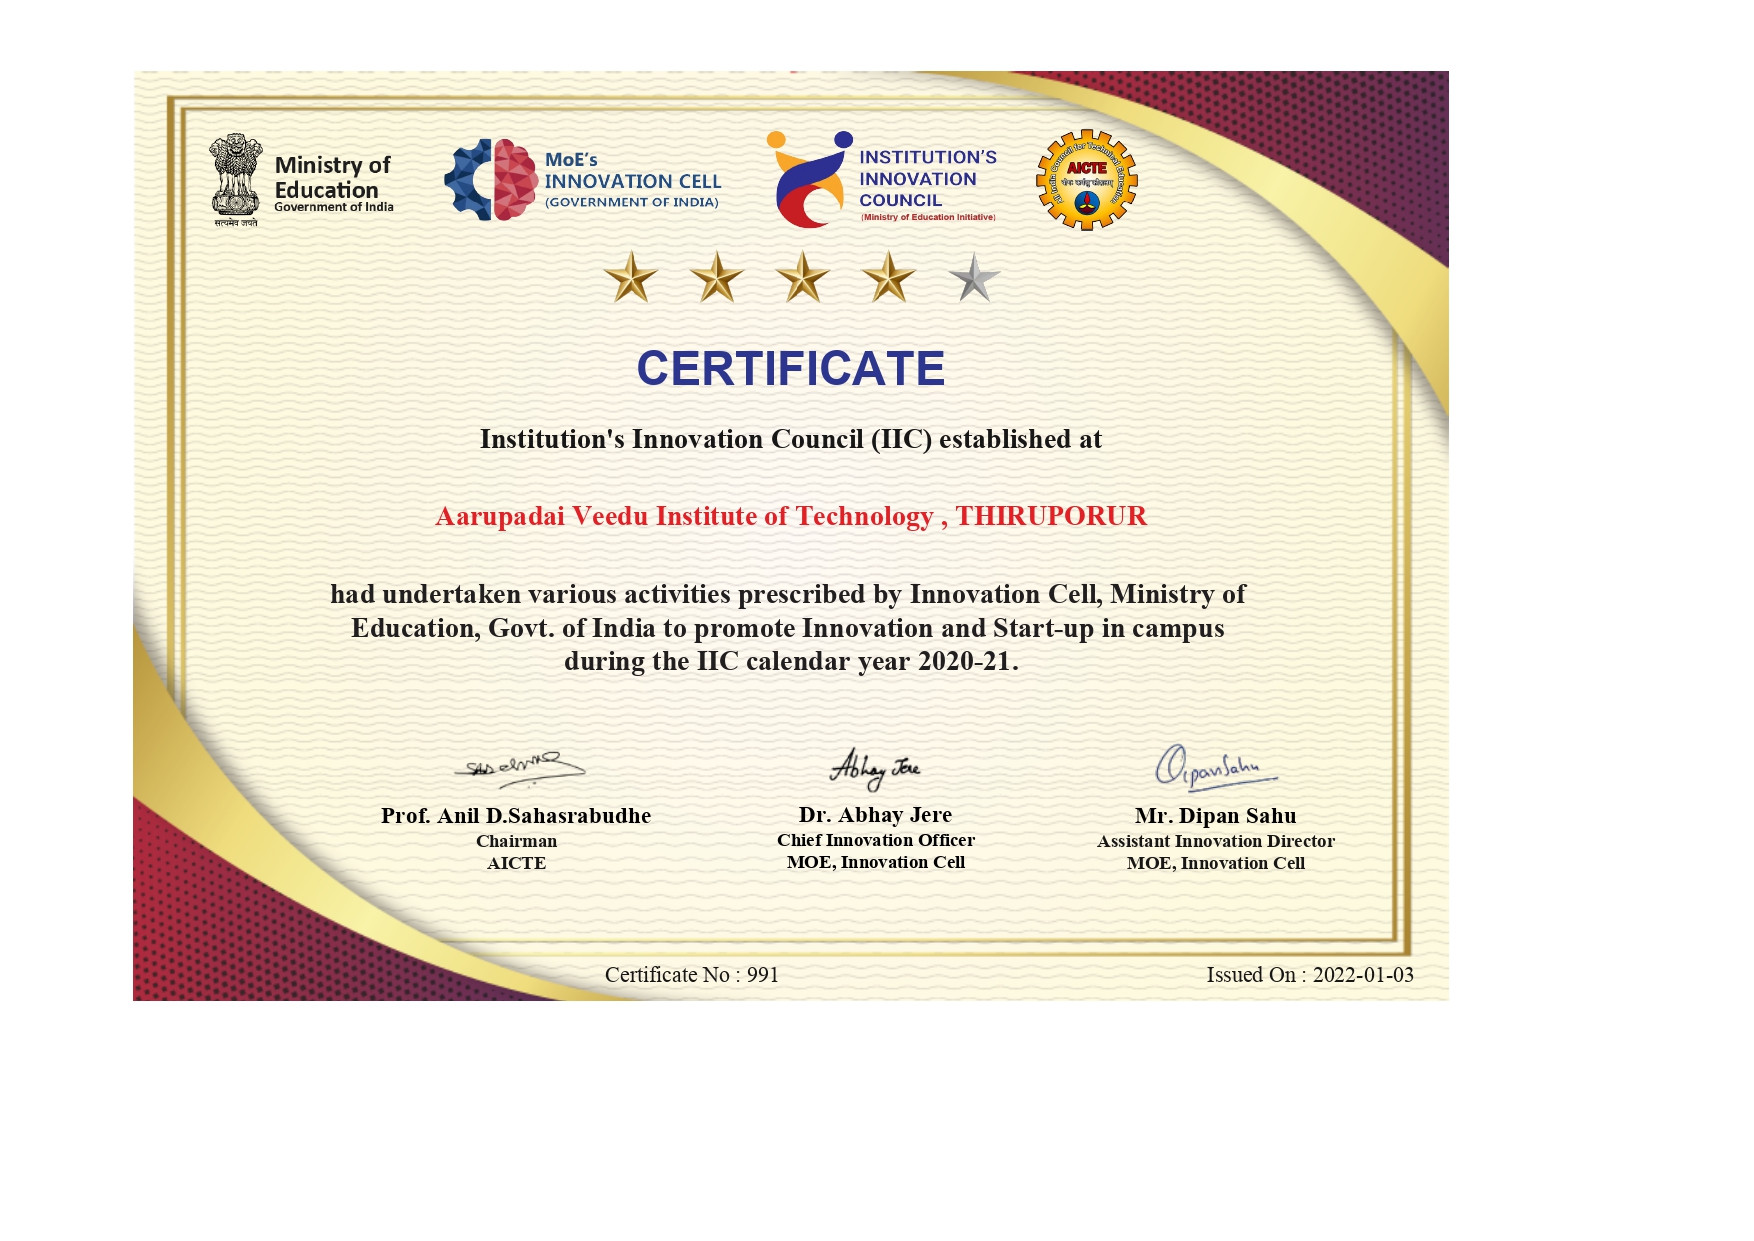 IIC Certificate